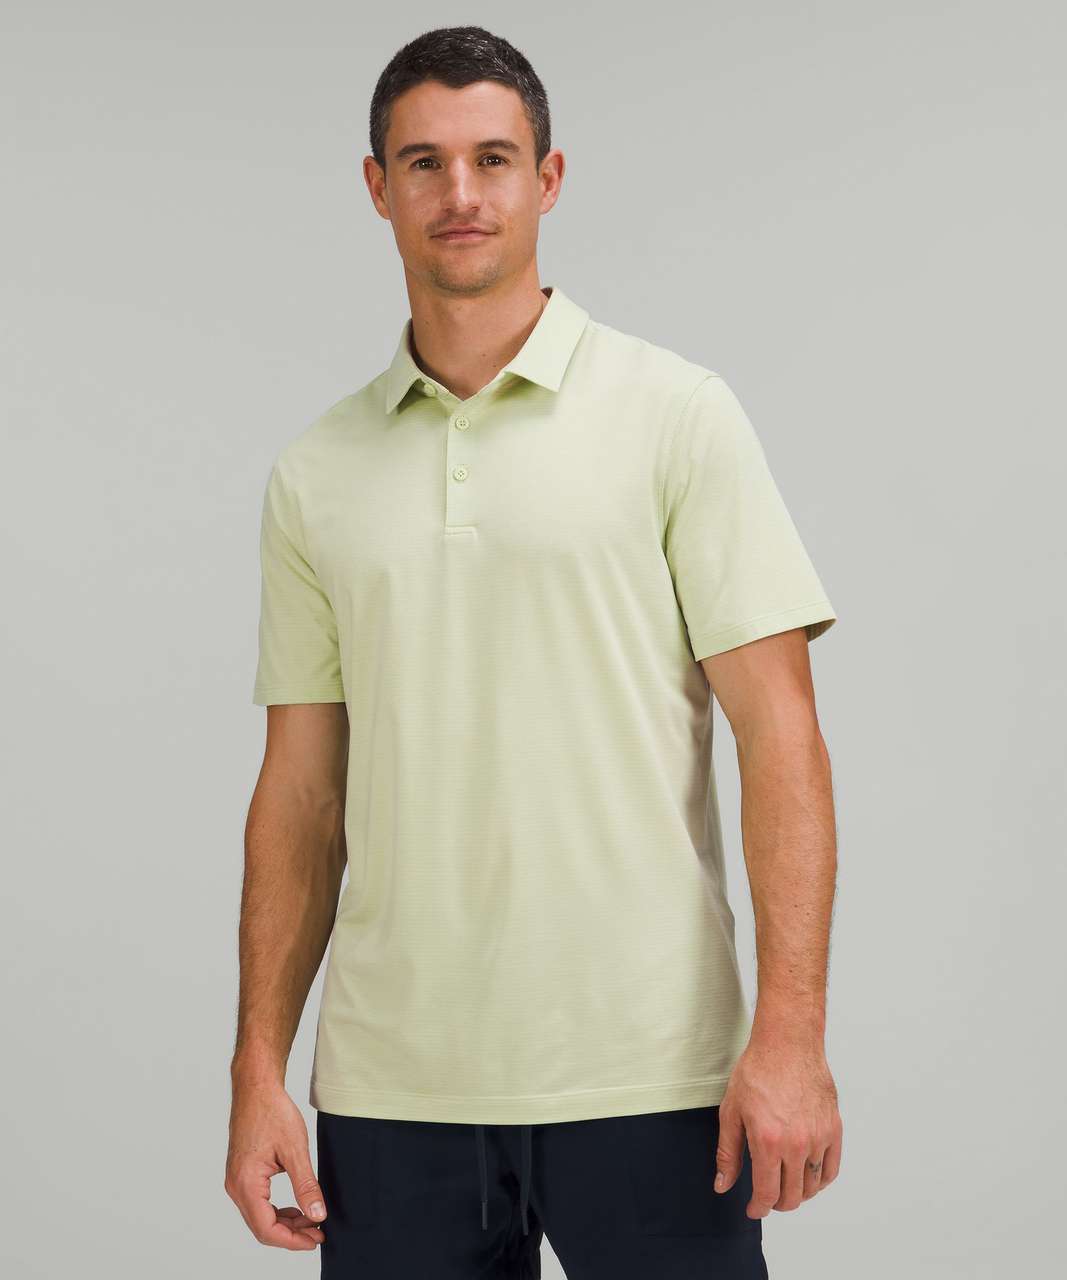 Lululemon Evolution Short Sleeve Polo Shirt In Tidal Dye Desert Sun Date  Brown